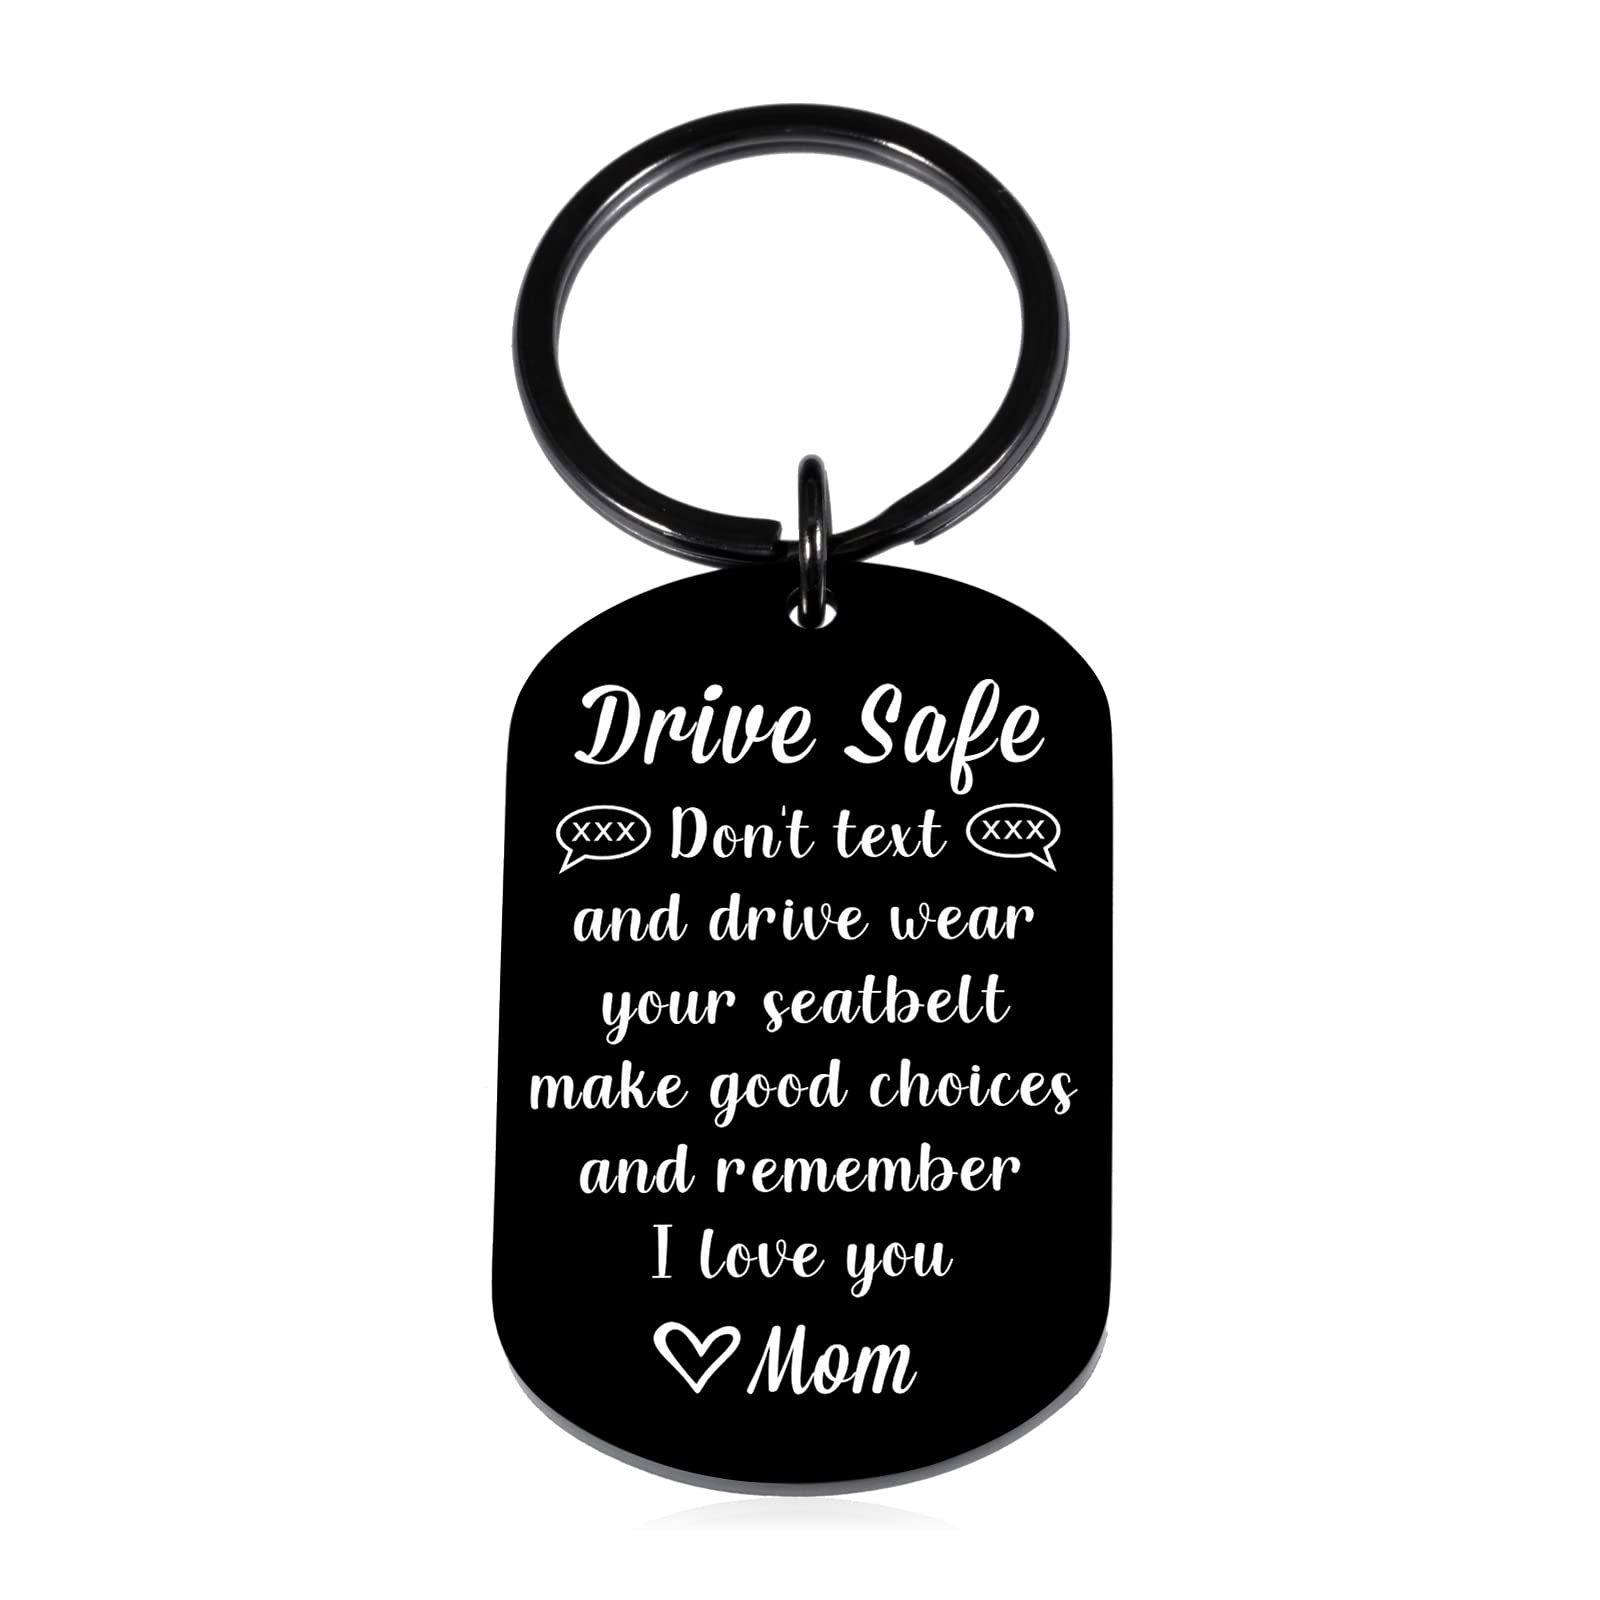 Drive safe keychain